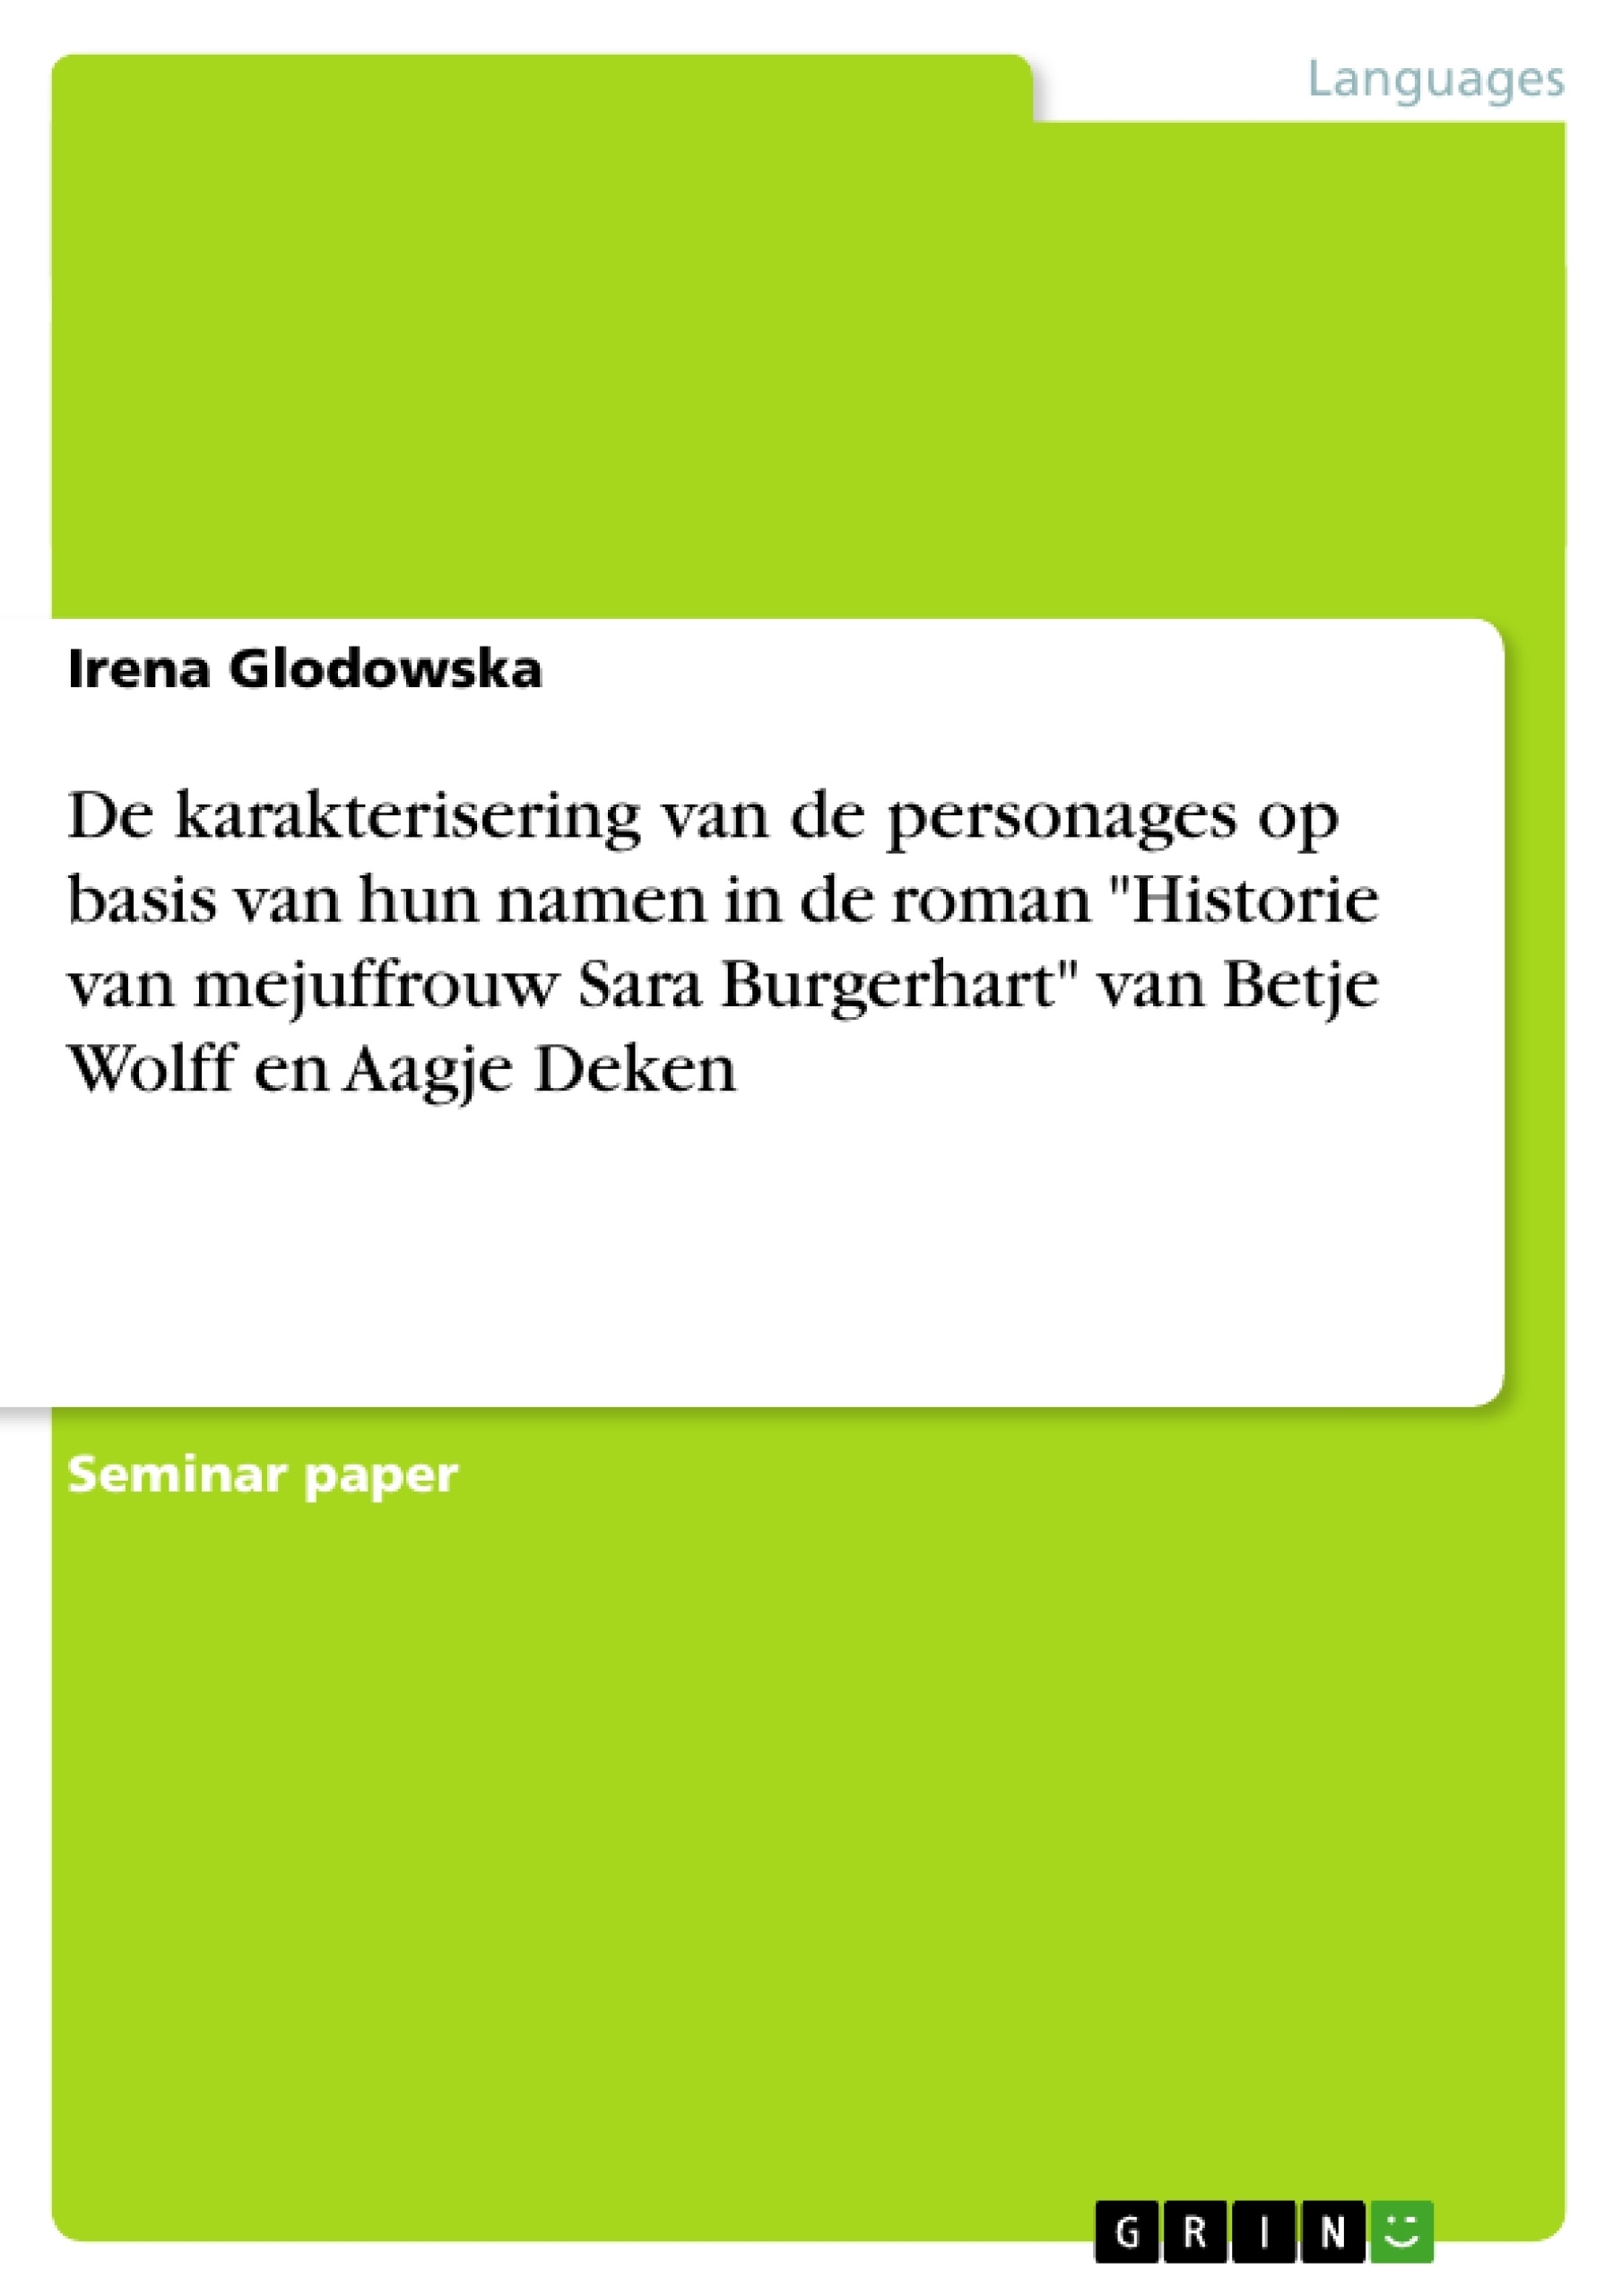 Titre: De karakterisering van de personages op basis van hun namen in de roman "Historie van mejuffrouw Sara Burgerhart" van Betje Wolff en Aagje Deken